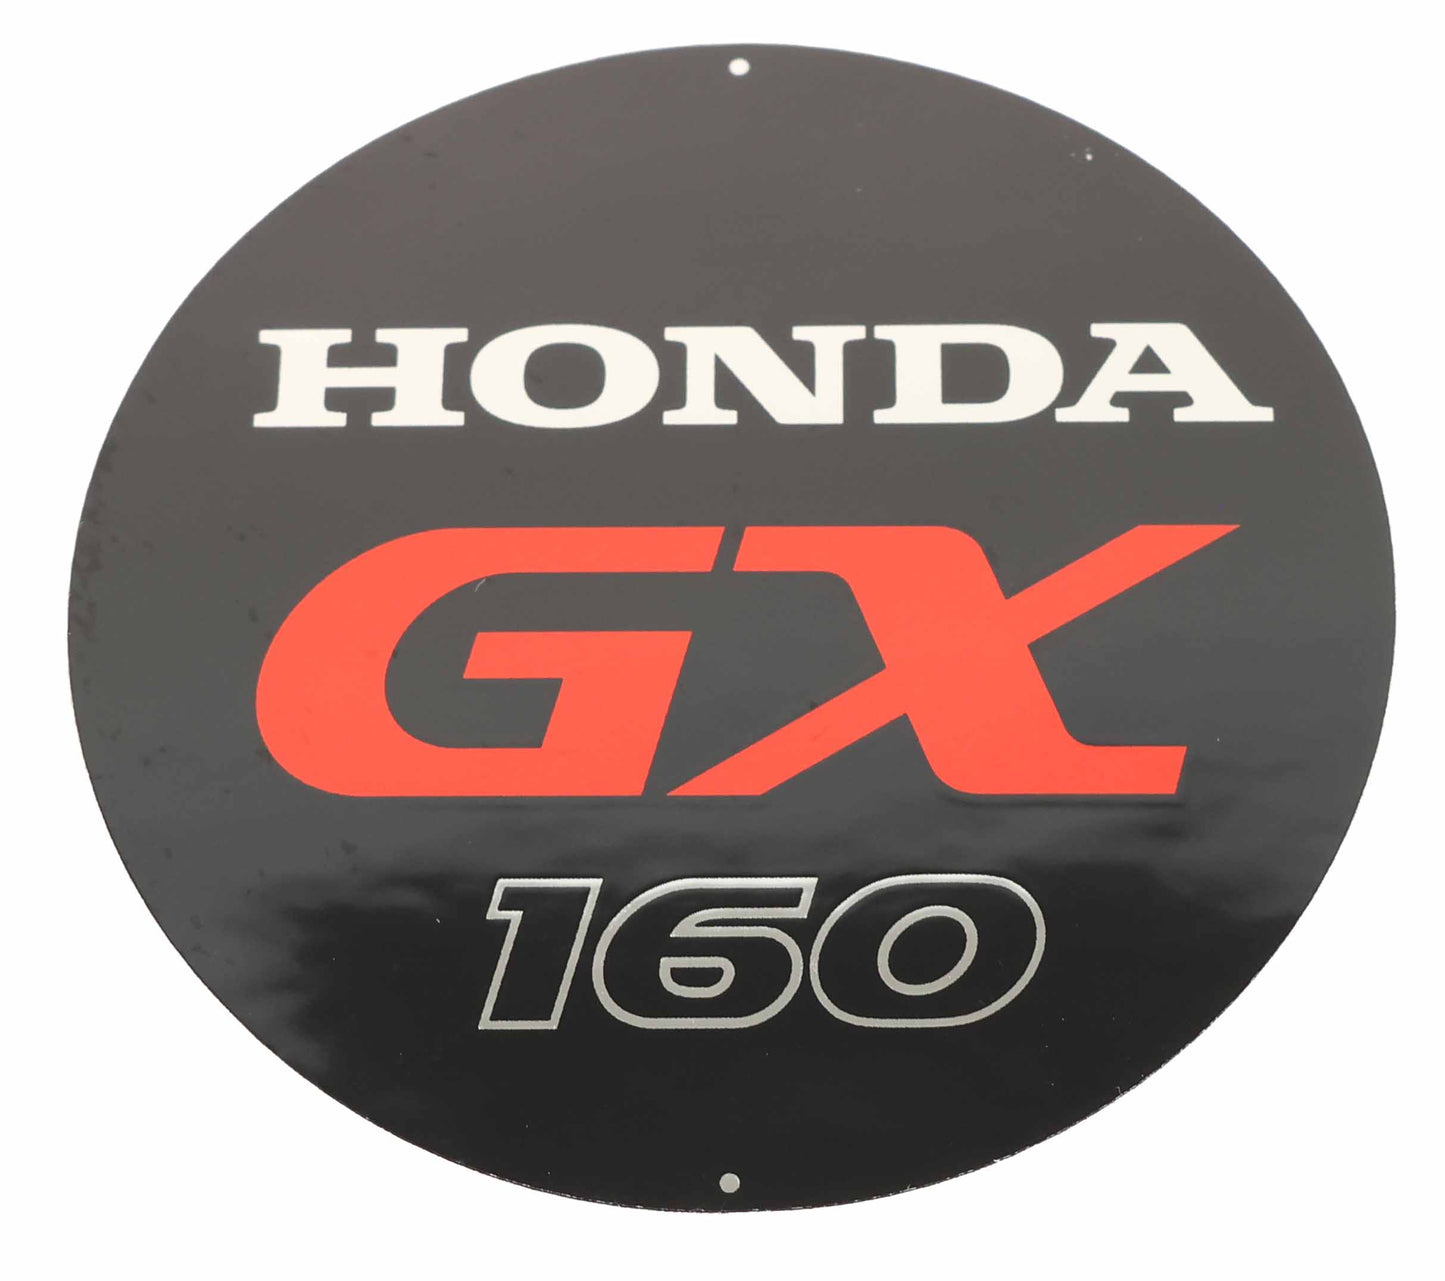 Honda Original Equipment Emblem (Gx160) - 87521-Z4M-000